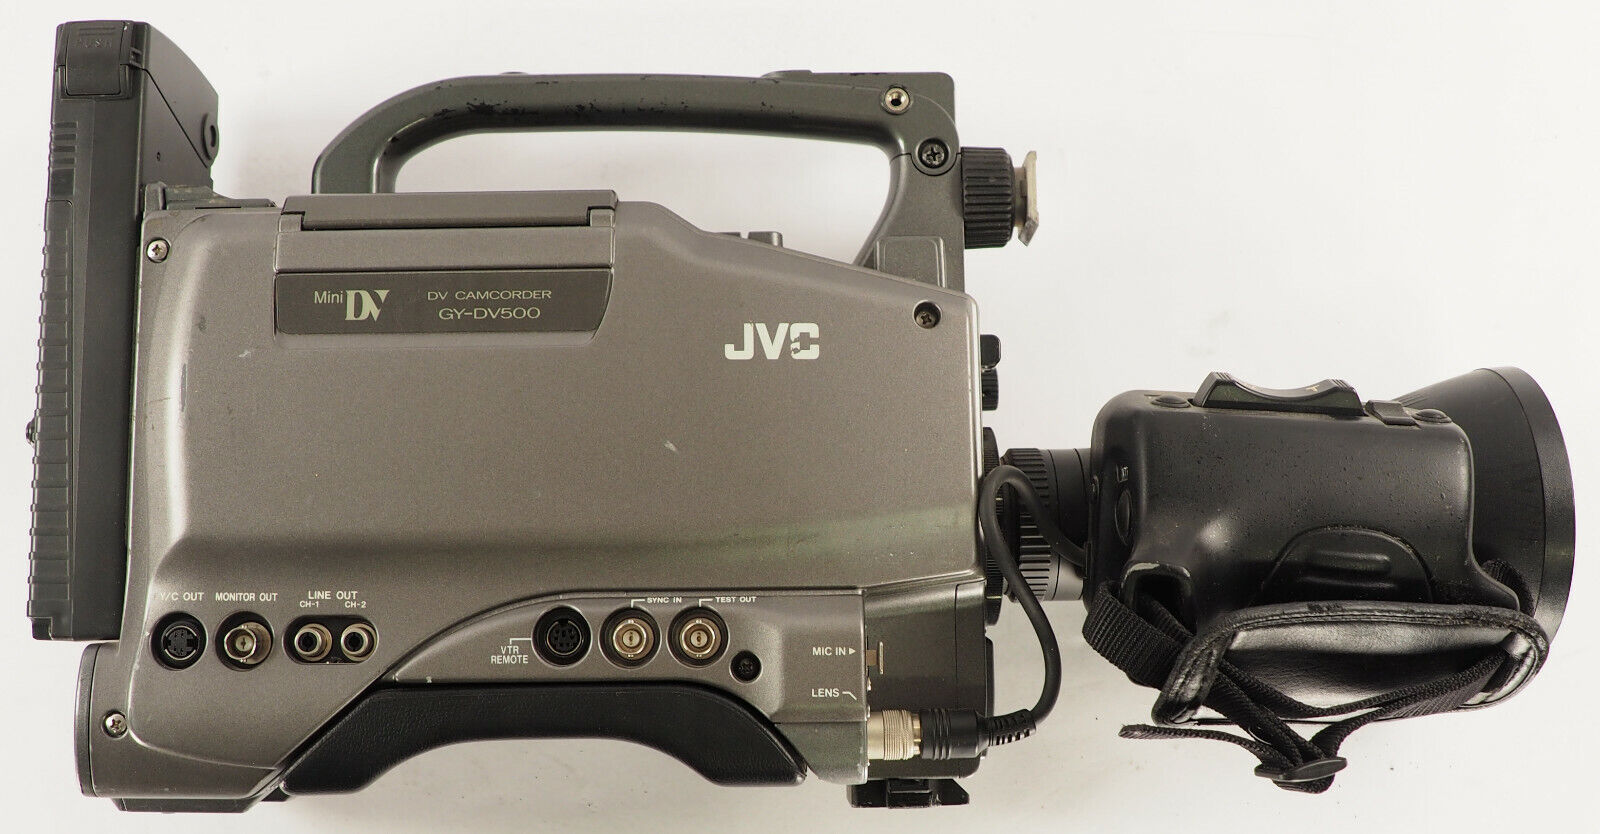 Lot of 4 Limited JVC DV CAMCORDER GY-DV550U And GY-DV500U With Fujinon-TV-Z Lens JVC GY-DV550U, GY-DV500U - фотография #2